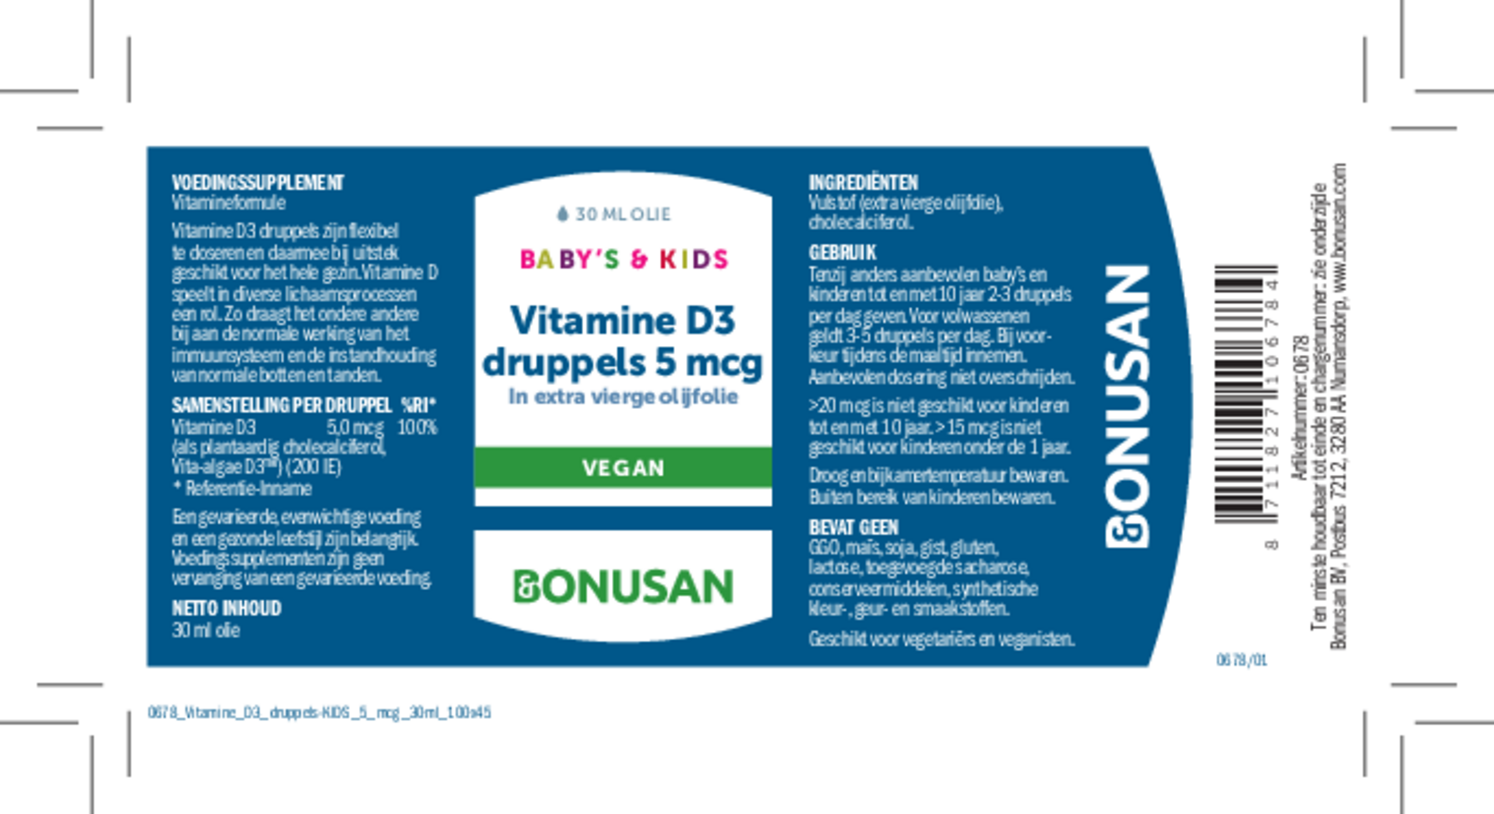 Vitamine D3 5 mcg Druppels Kids afbeelding van document #1, etiket